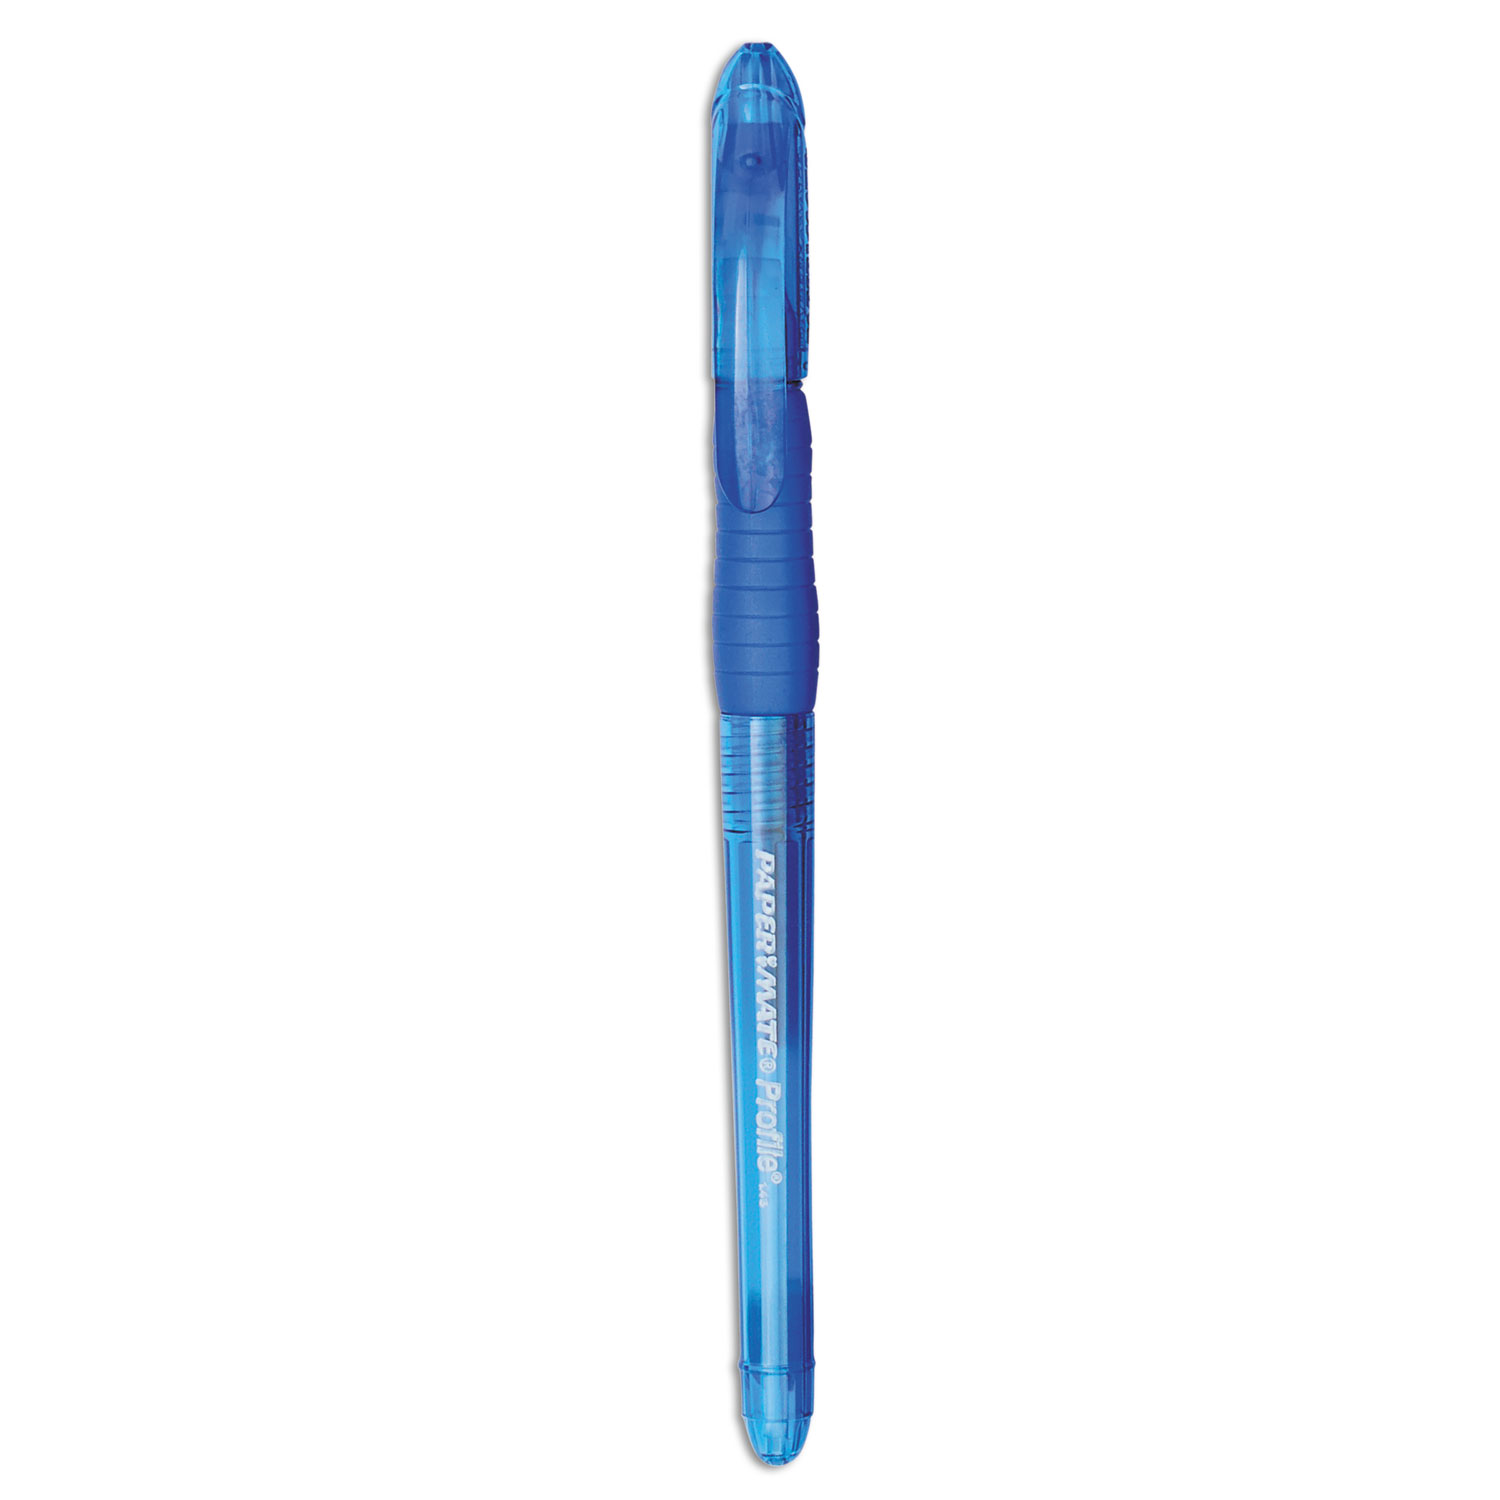  Paper Mate 70602 Profile Stick Ballpoint Pen, 1.4mm, Blue Ink, Translucent Blue Barrel, Dozen (PAP70602) 